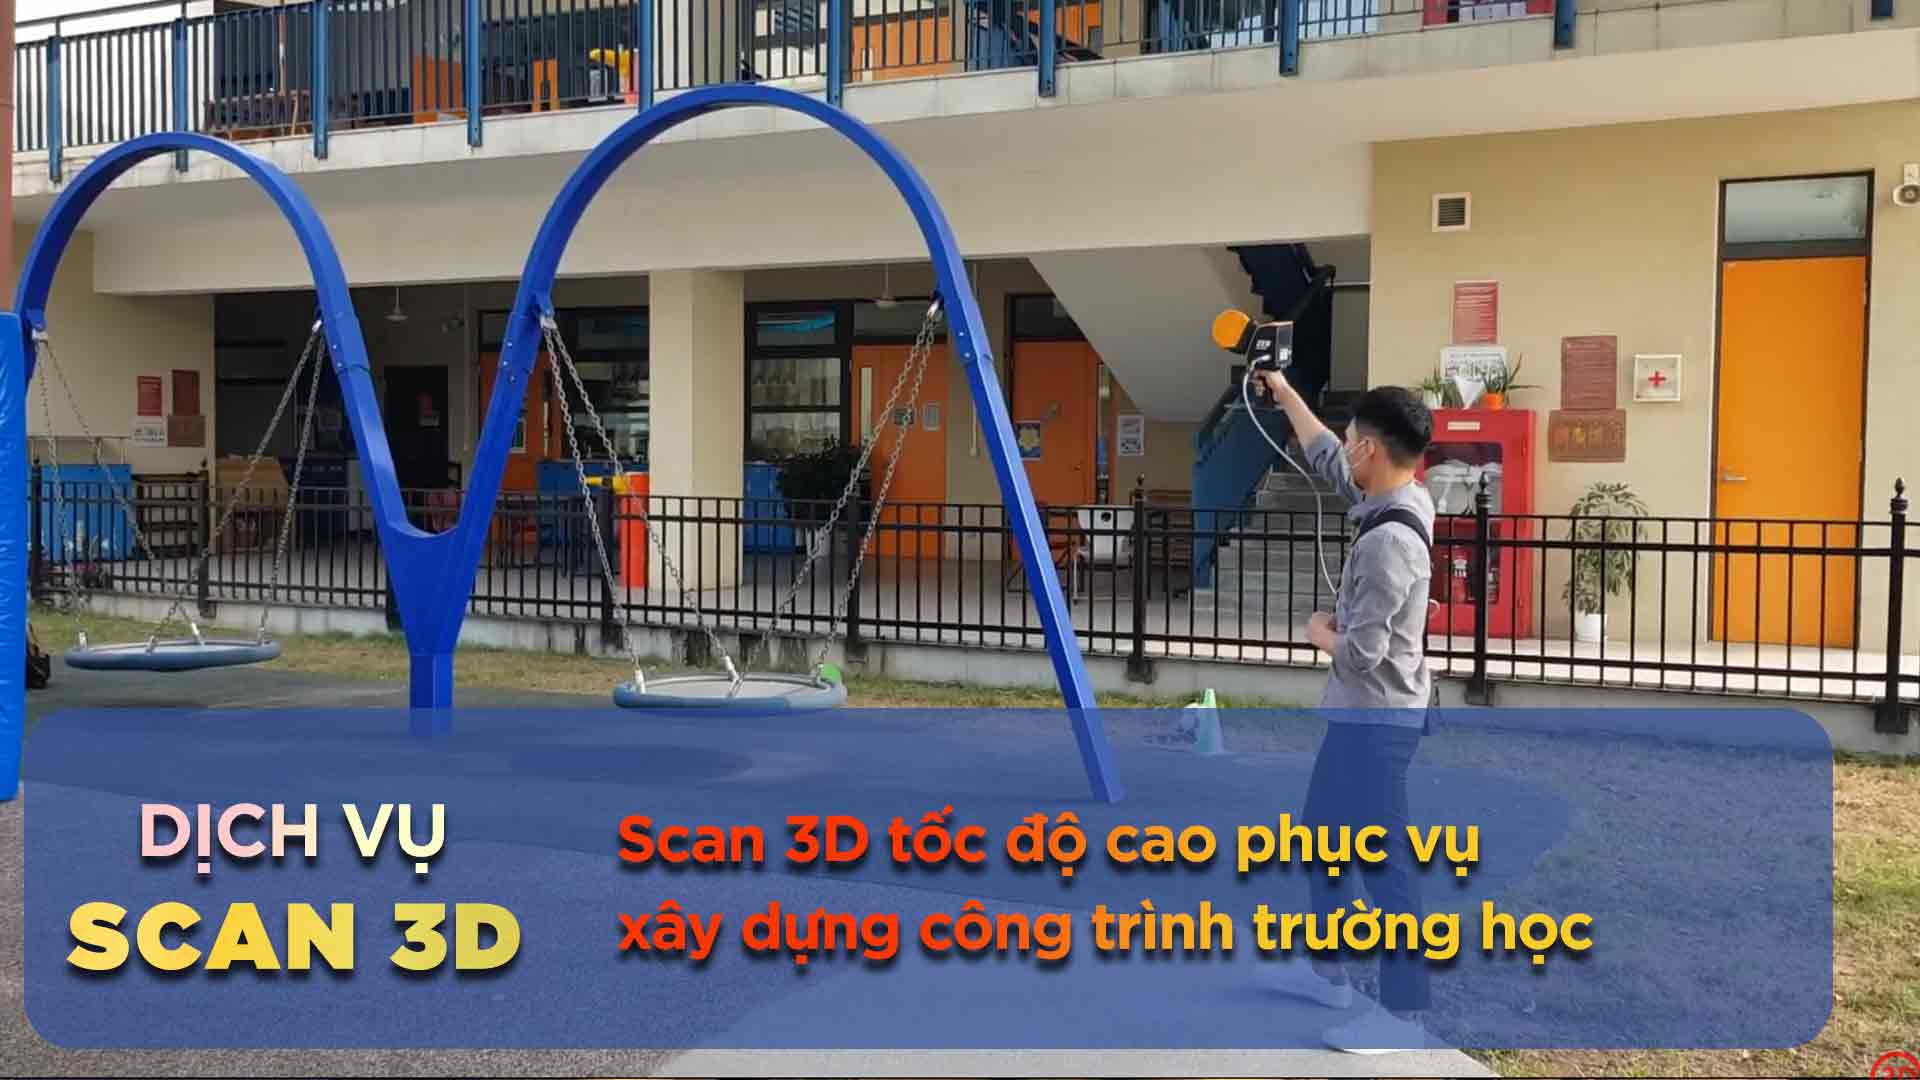 Scan 3D tốc độc cao phục vụ xây dựng công trình trường học